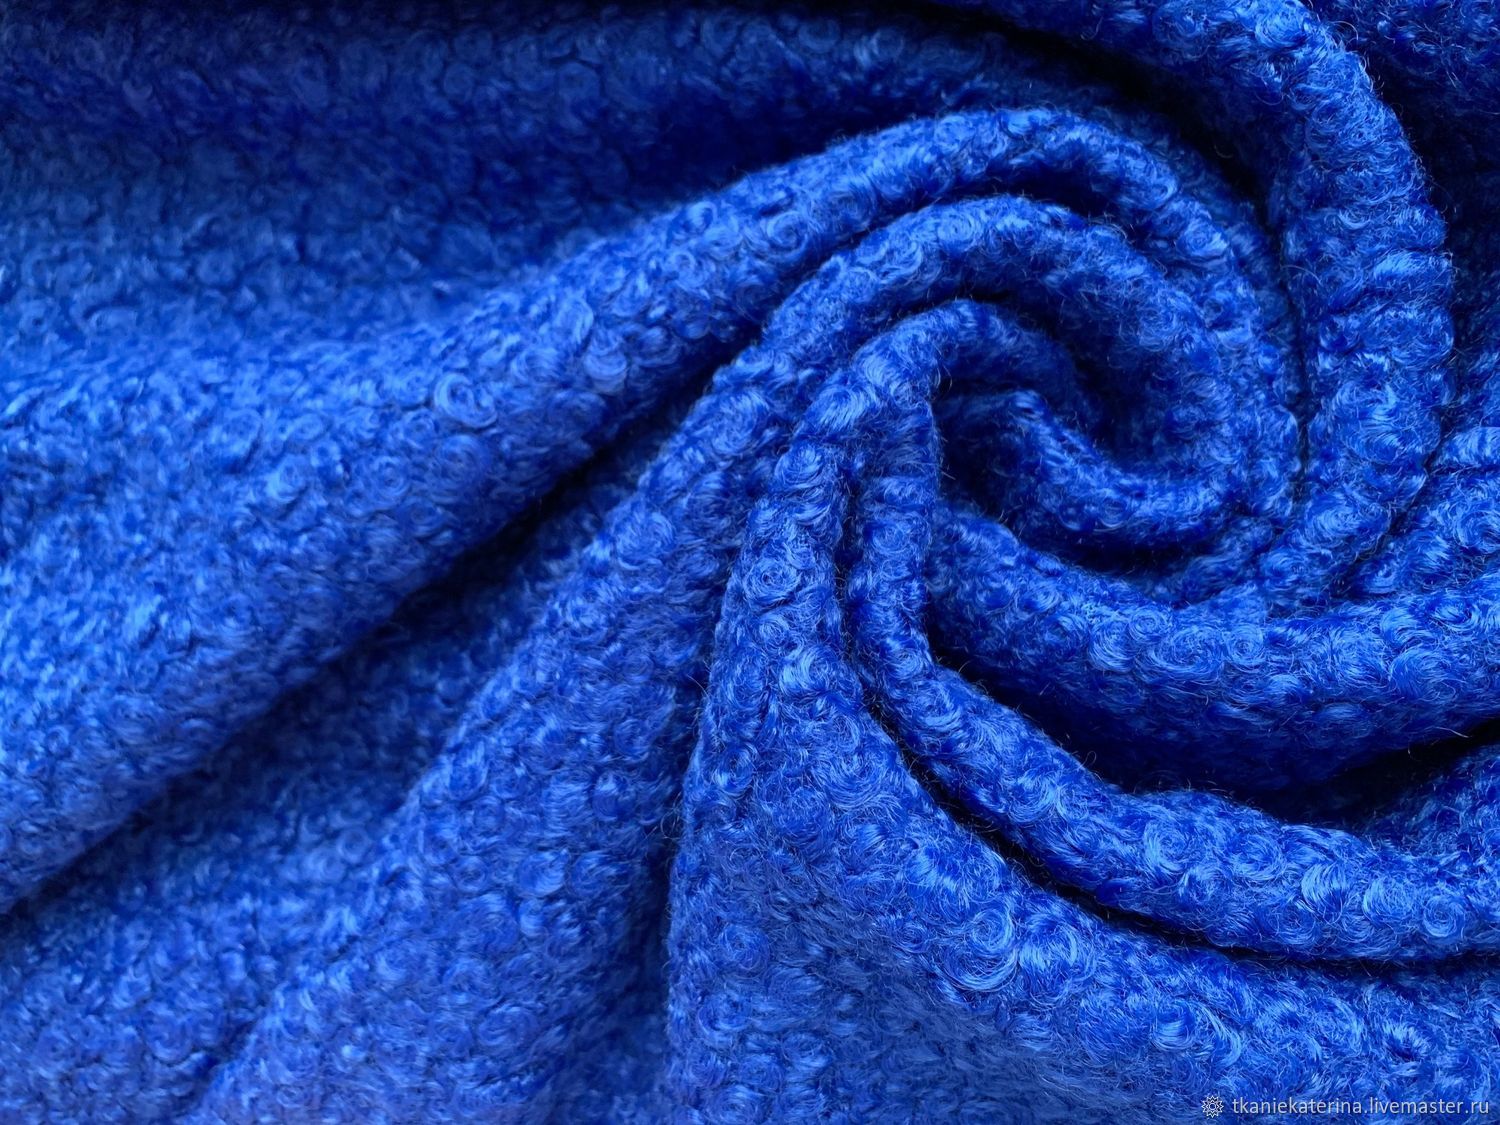 Ткань пальтовая эко мех каракуль